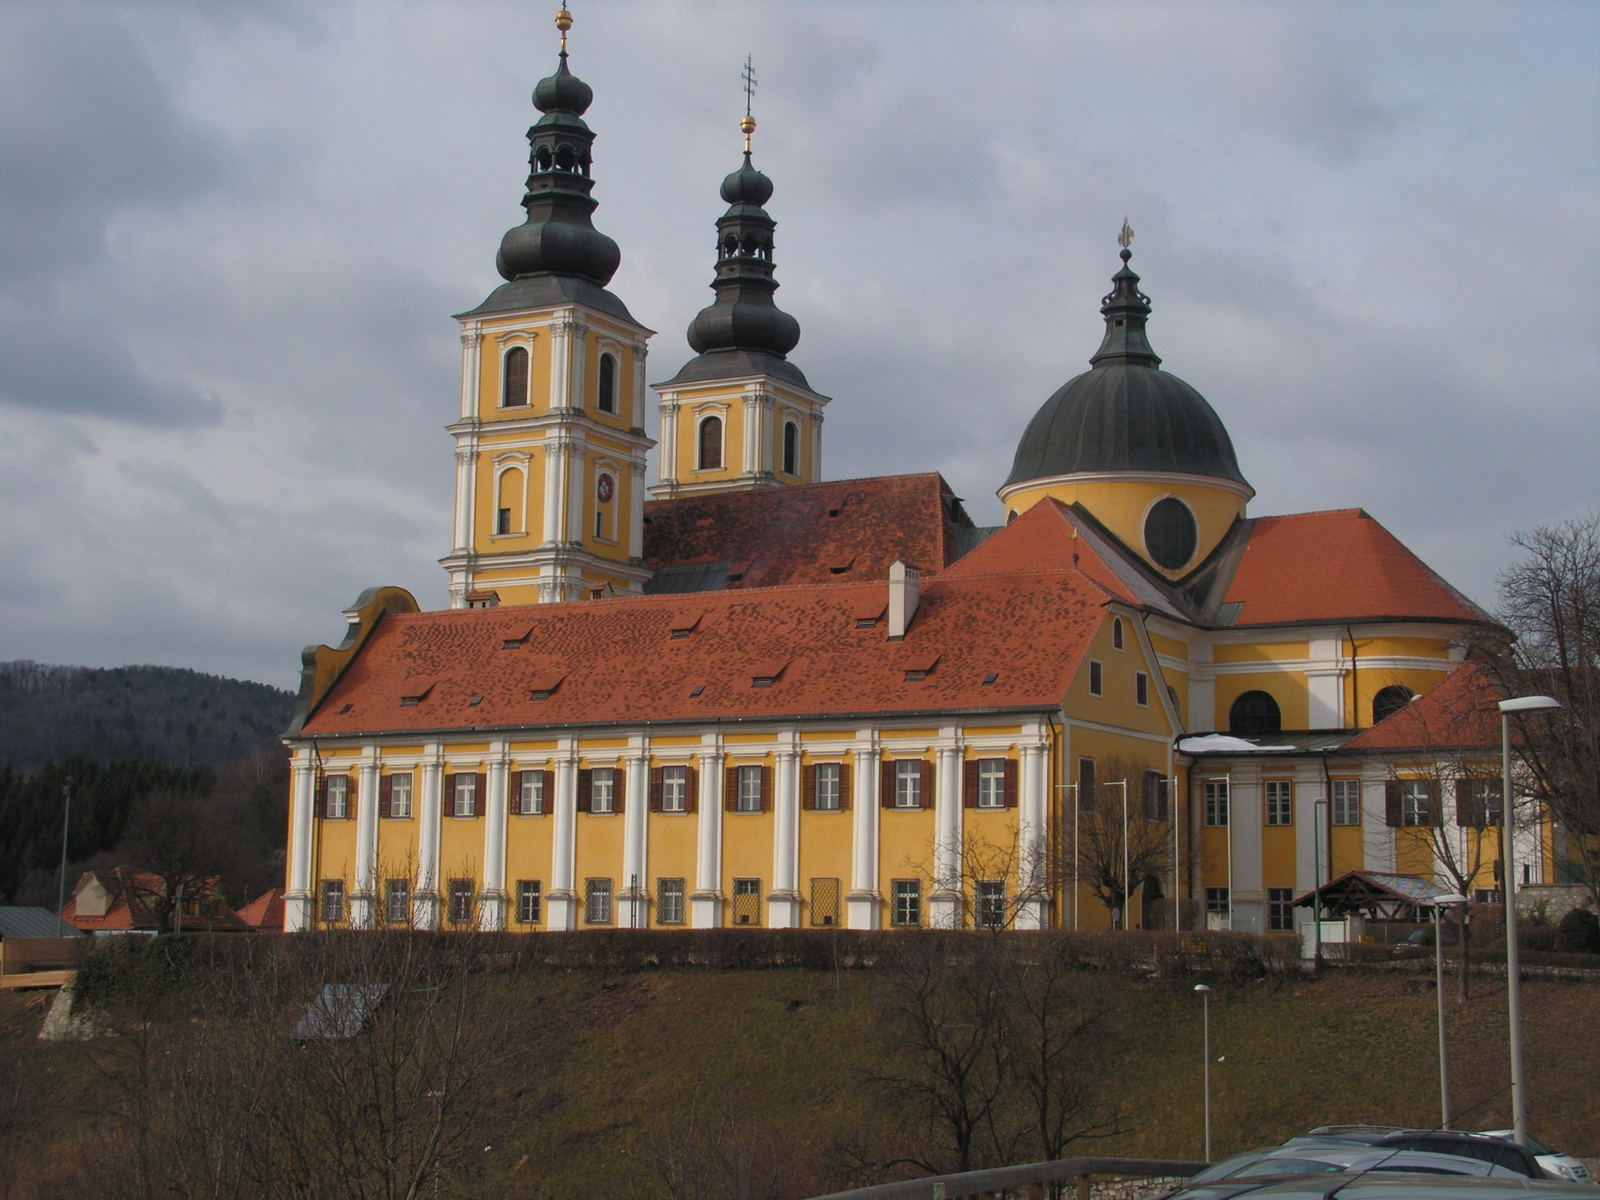 Ausztria, Grác/Maria Trost, a bazilika minor, SzG3